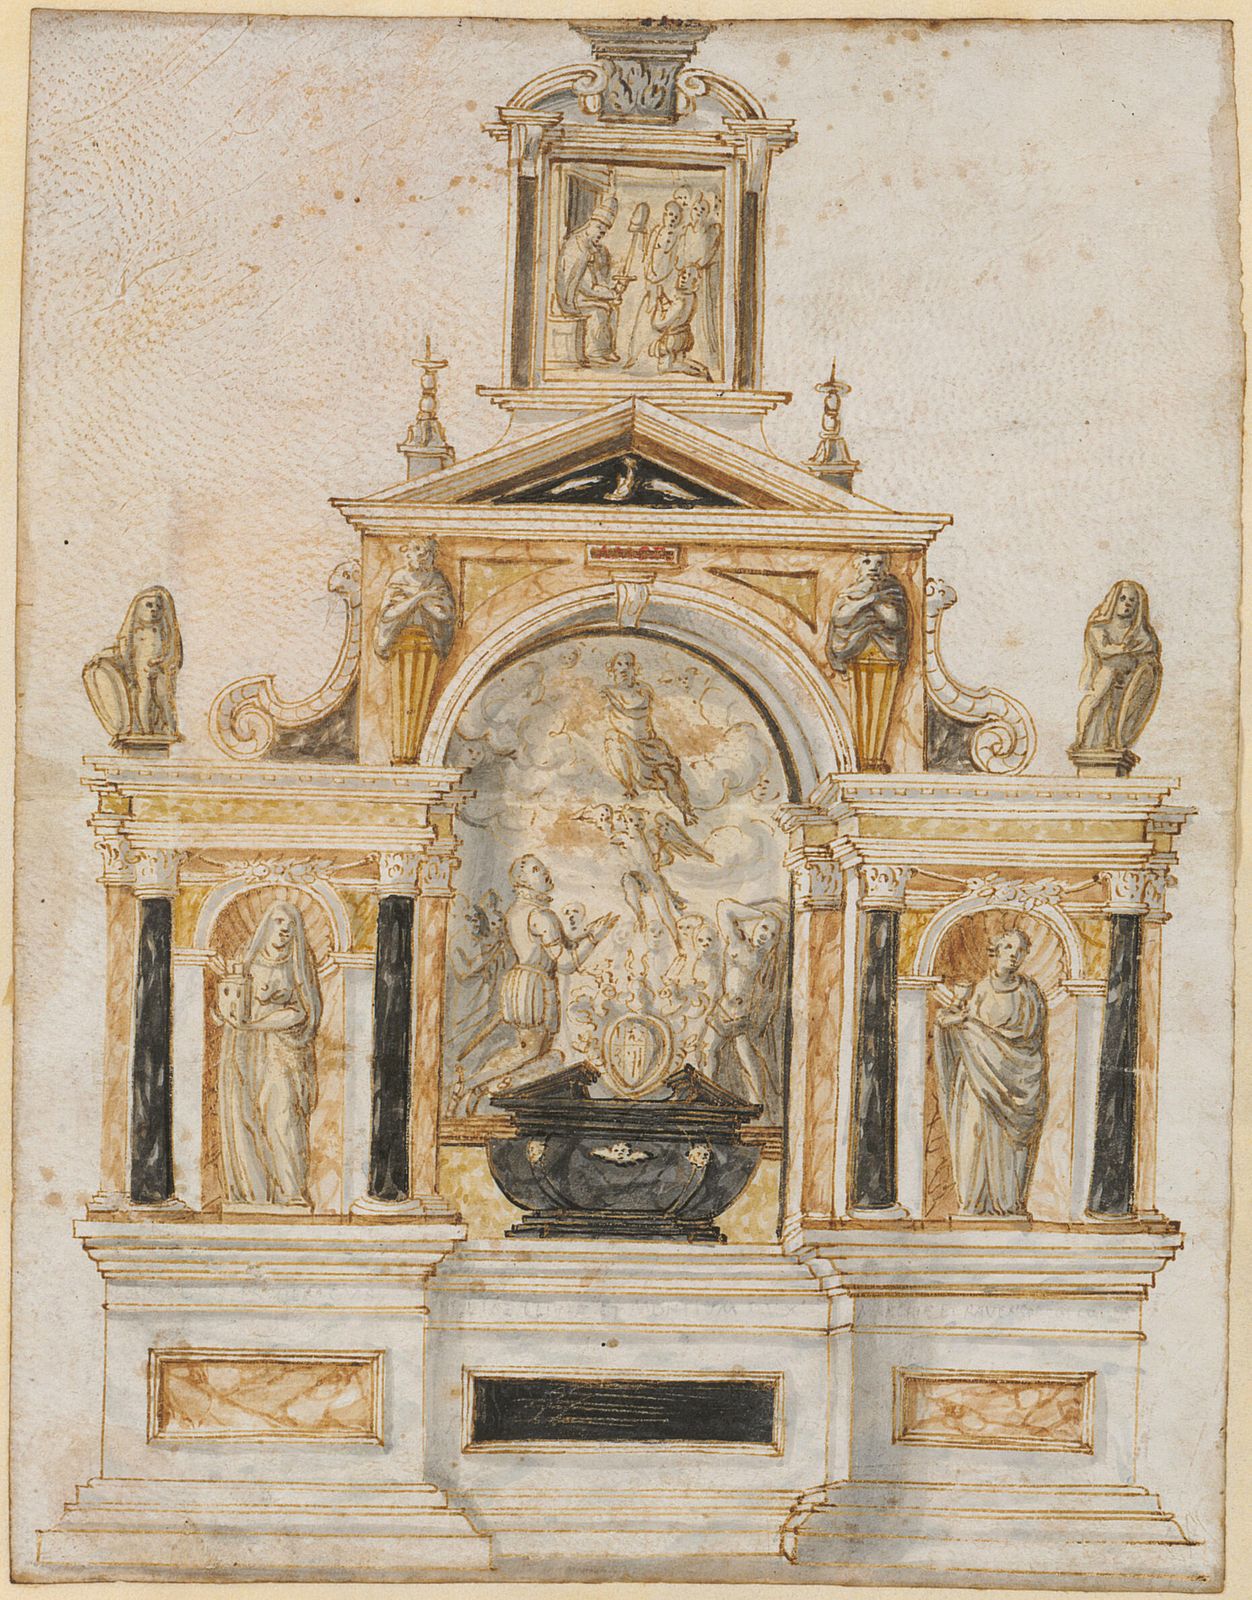 Grabmal des Herzogs Friedrich Karl von Jülich-Kleve-Berg (gest. 1575) in S. Maria dell'Anima in Rom